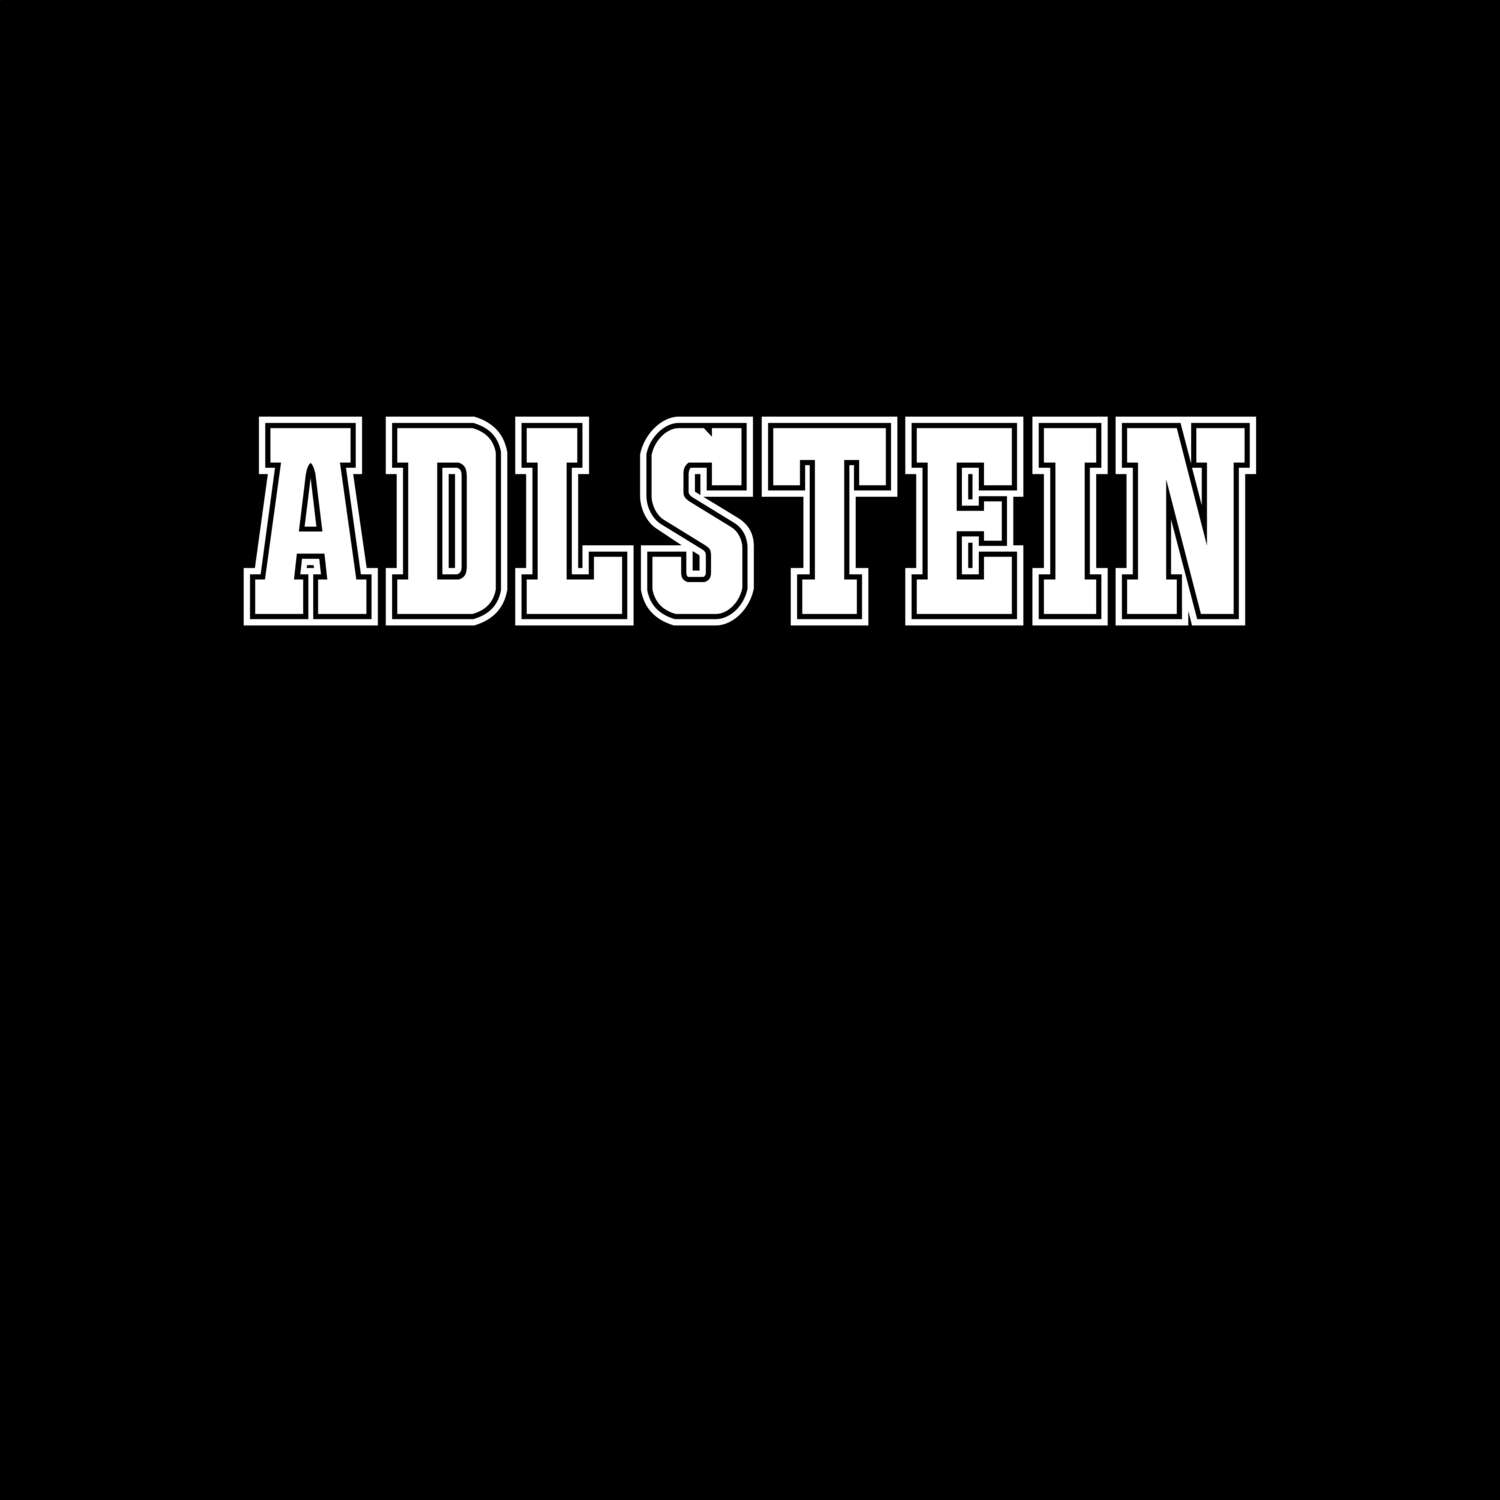 Adlstein T-Shirt »Classic«